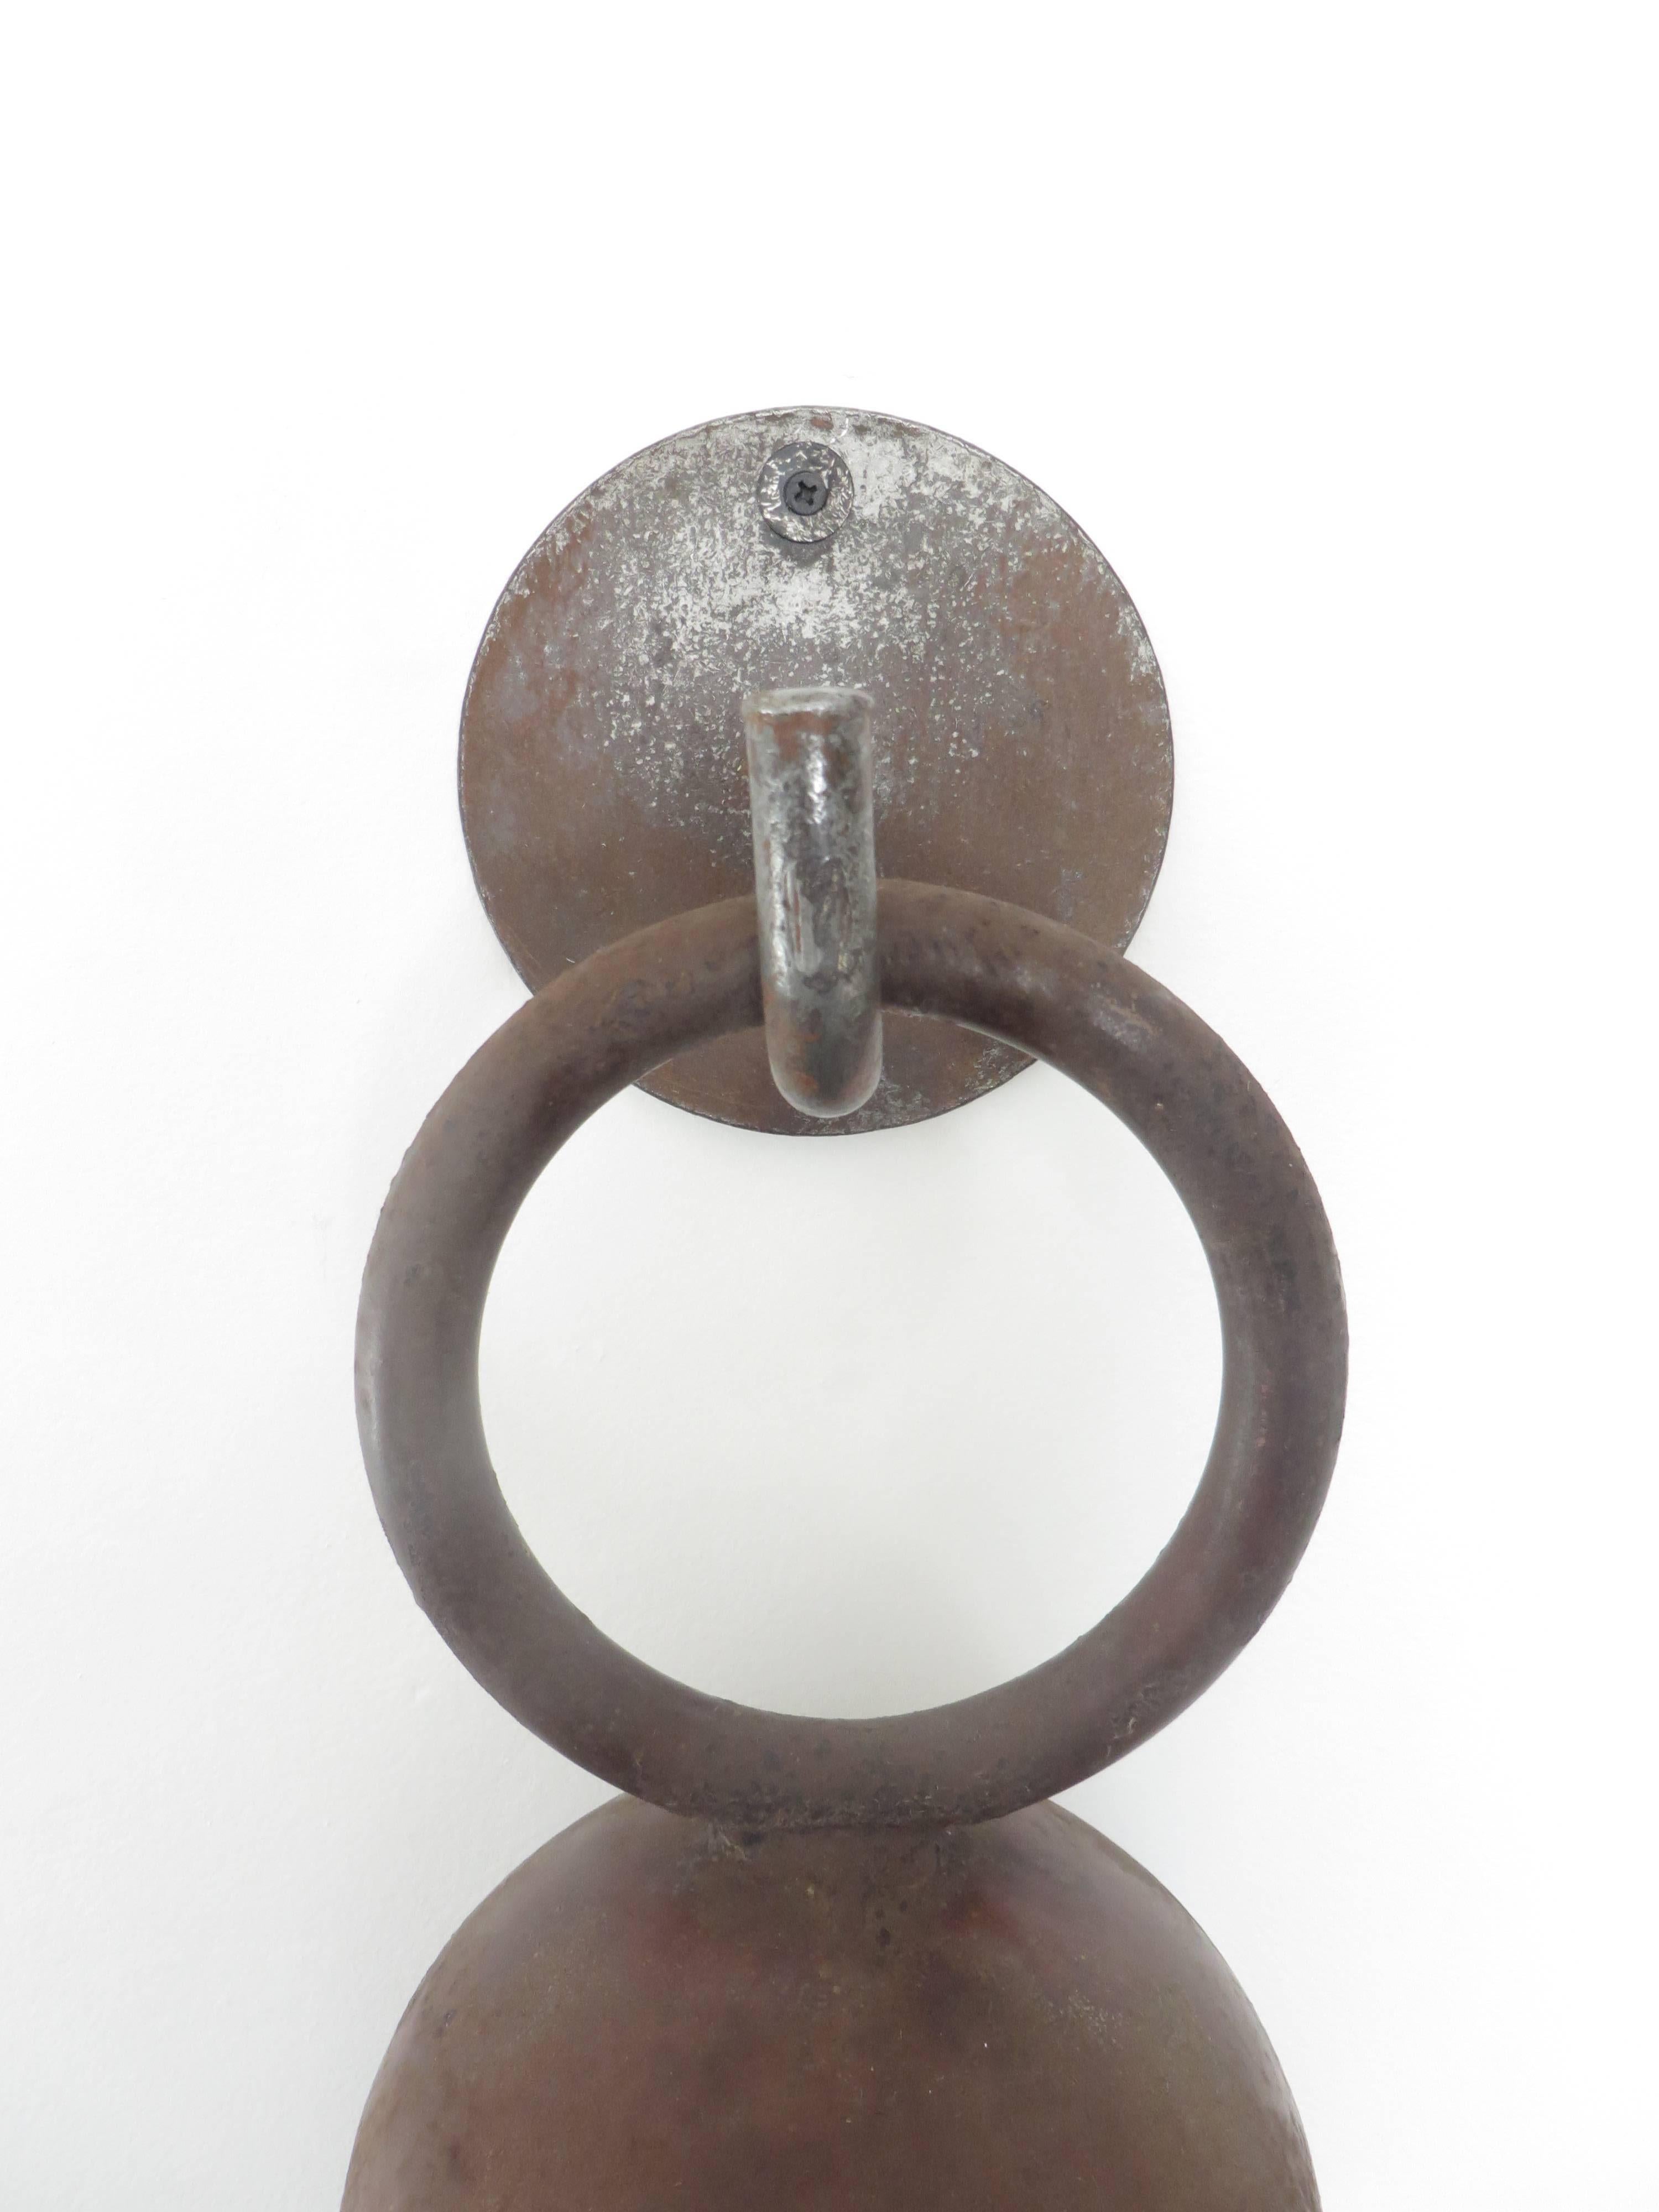 Late 20th Century American Artist Tom Torrens Minimalist Vintage Welded Steel Door Gong or Bell